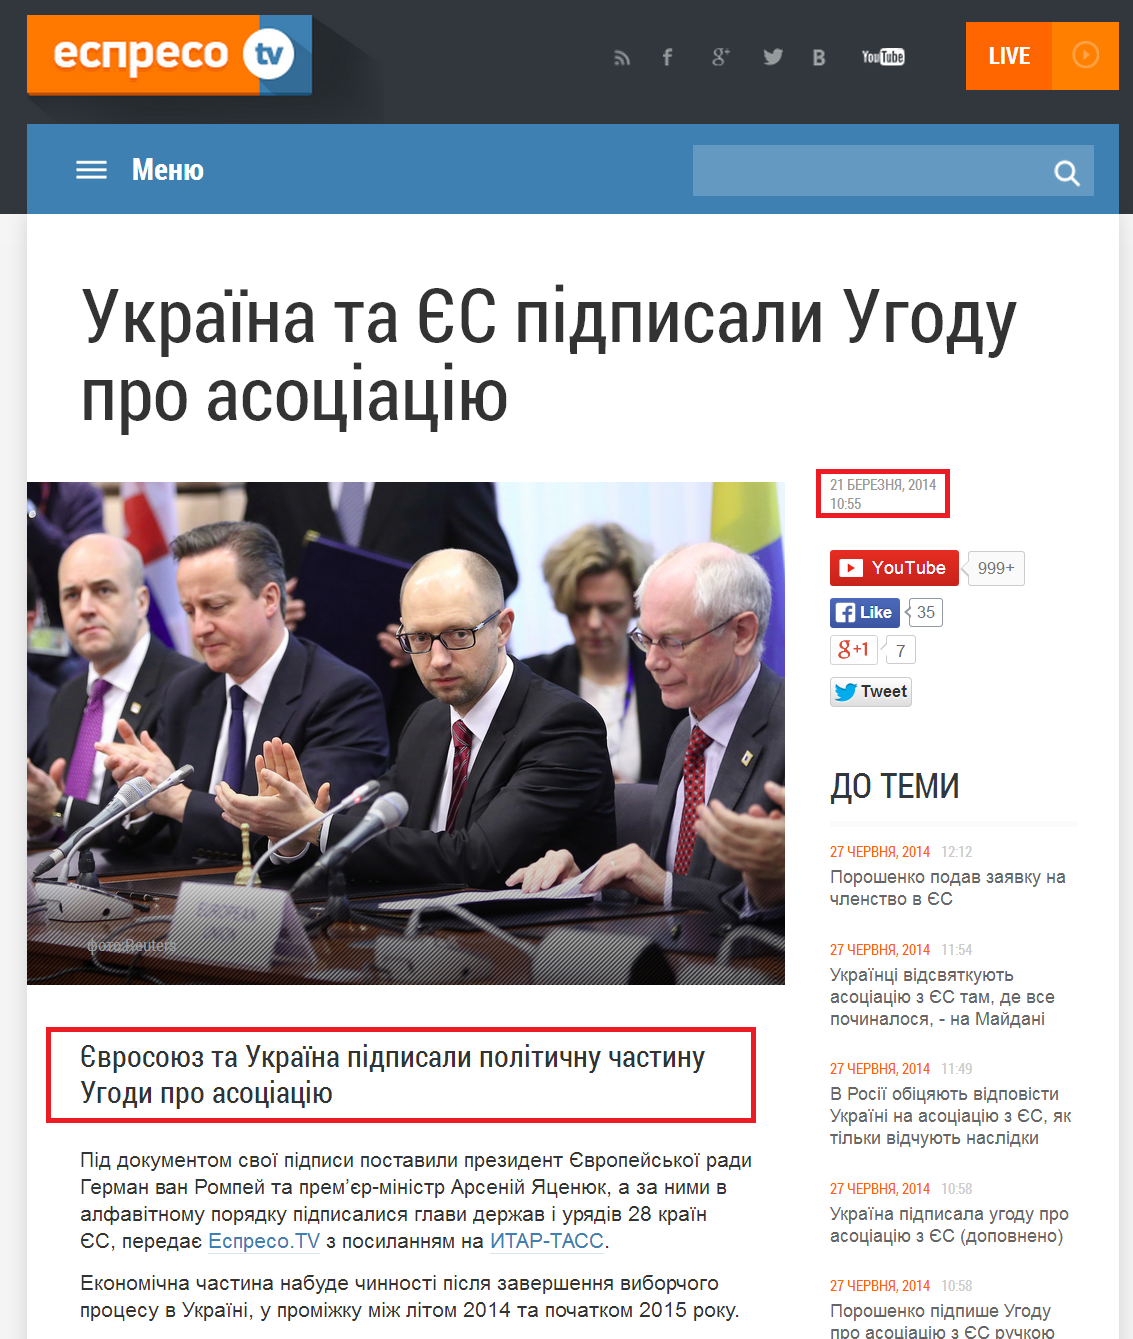 http://espreso.tv/new/2014/03/21/ukrayina_ta_yes_pidpysaly_uhodu_pro_asociaciyu